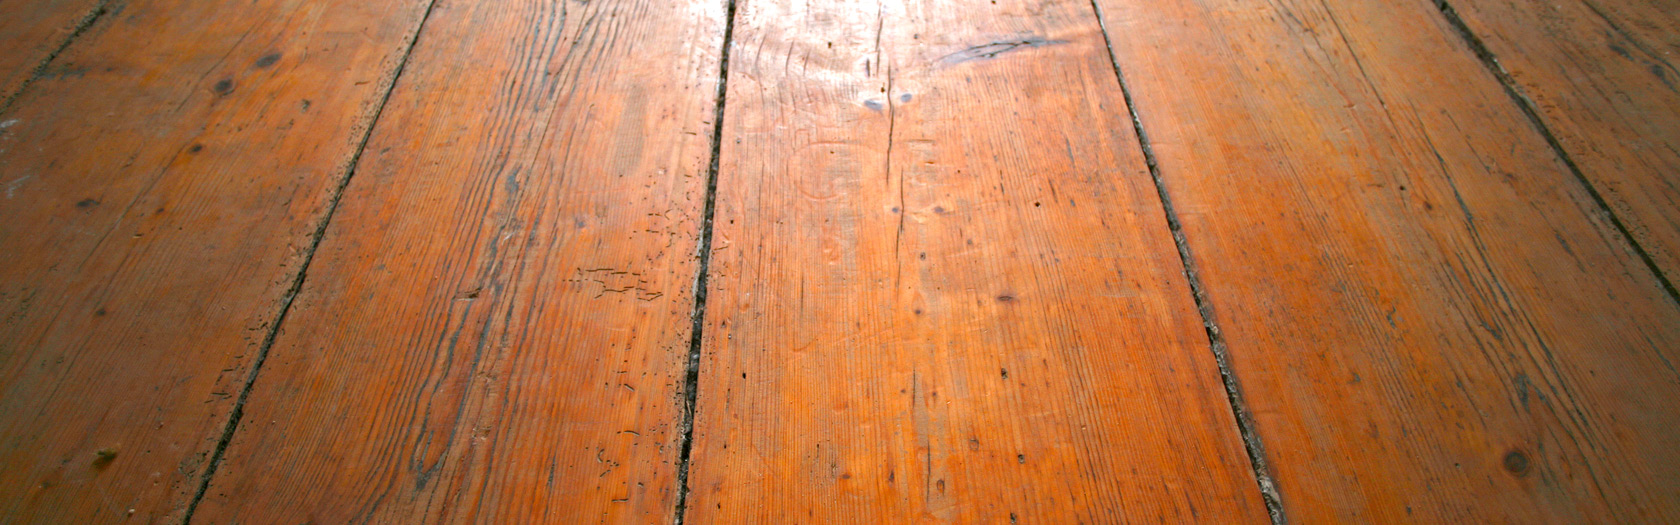 Wooden floor in the birth room